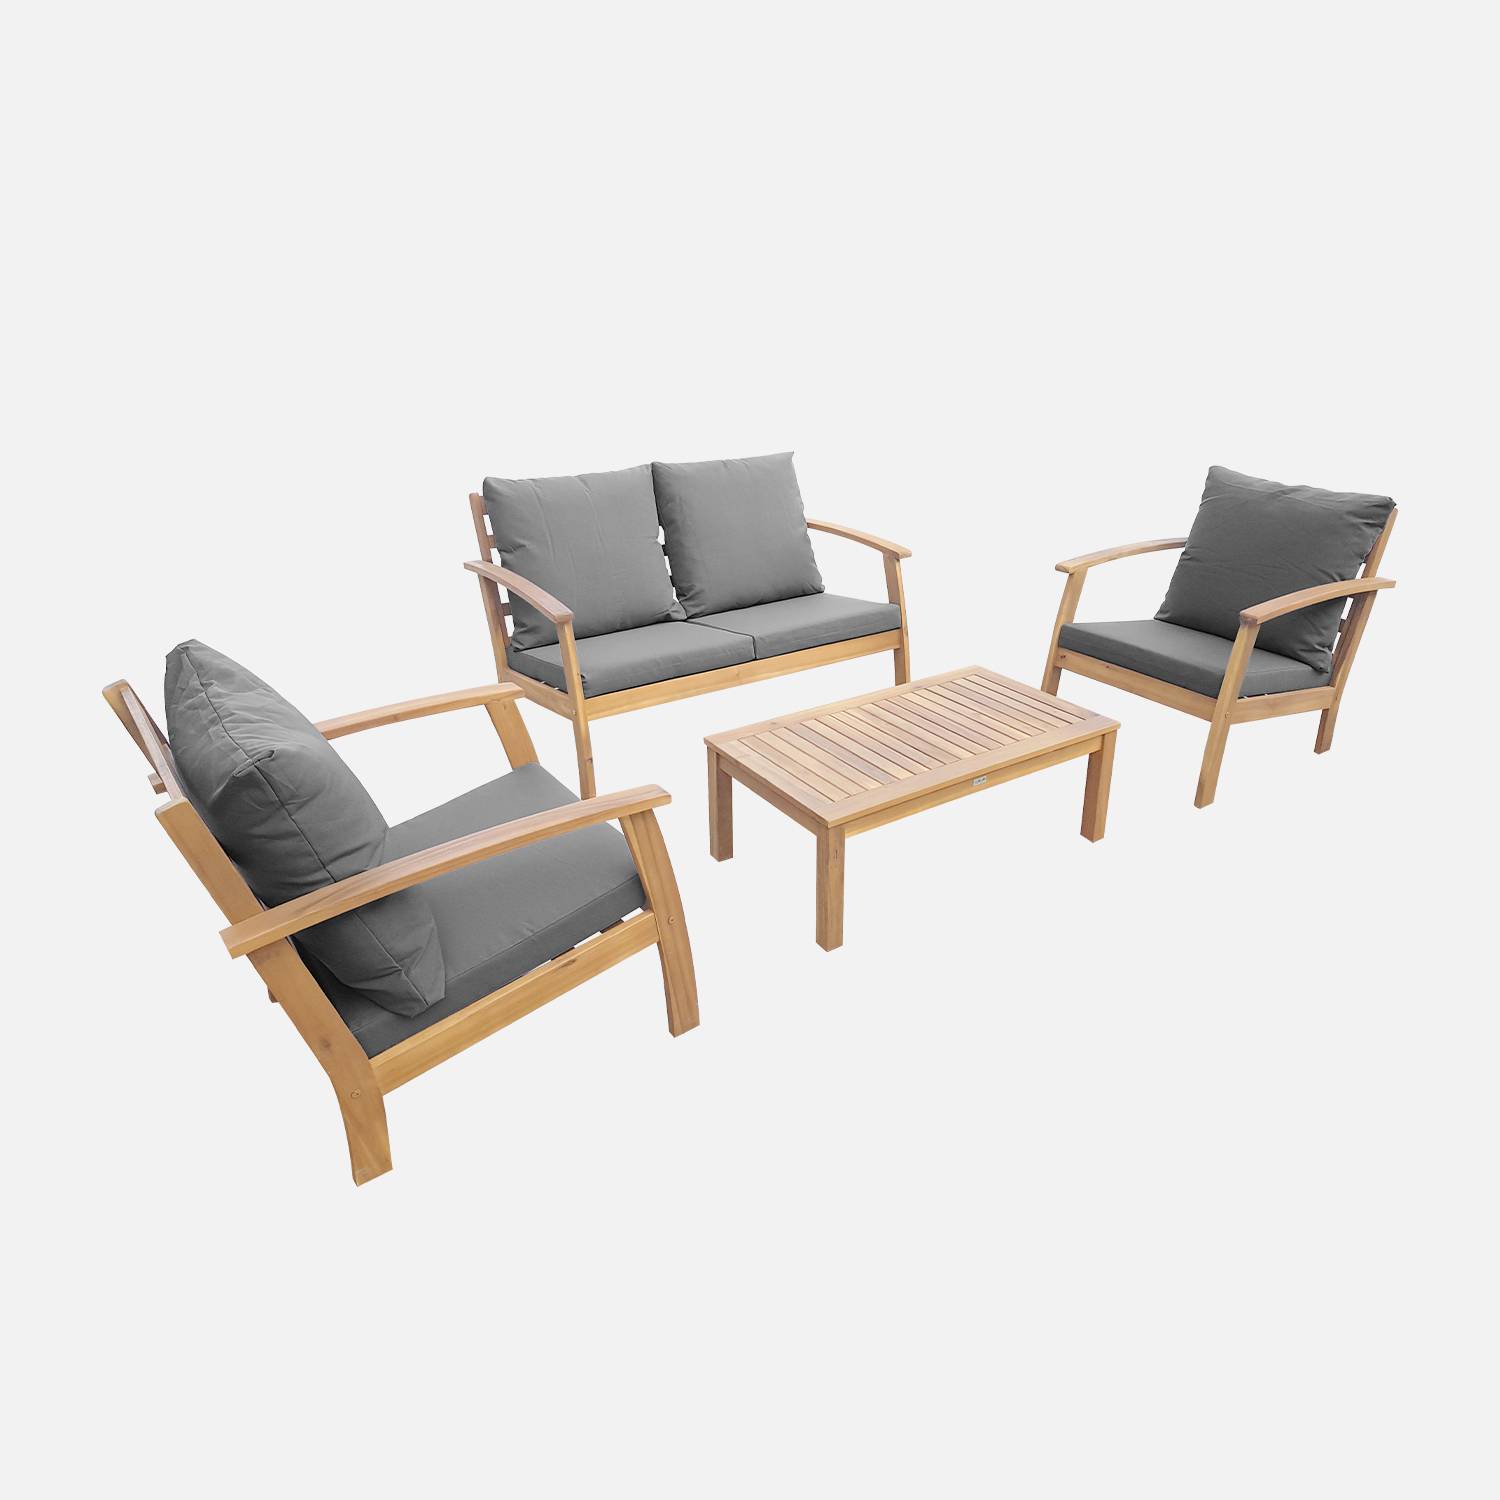 Gartengarnitur aus Holz 4 Sitze - Ushuaïa - graue Kissen, Sofa, Sessel und Couchtisch aus Akazie, Design Photo2